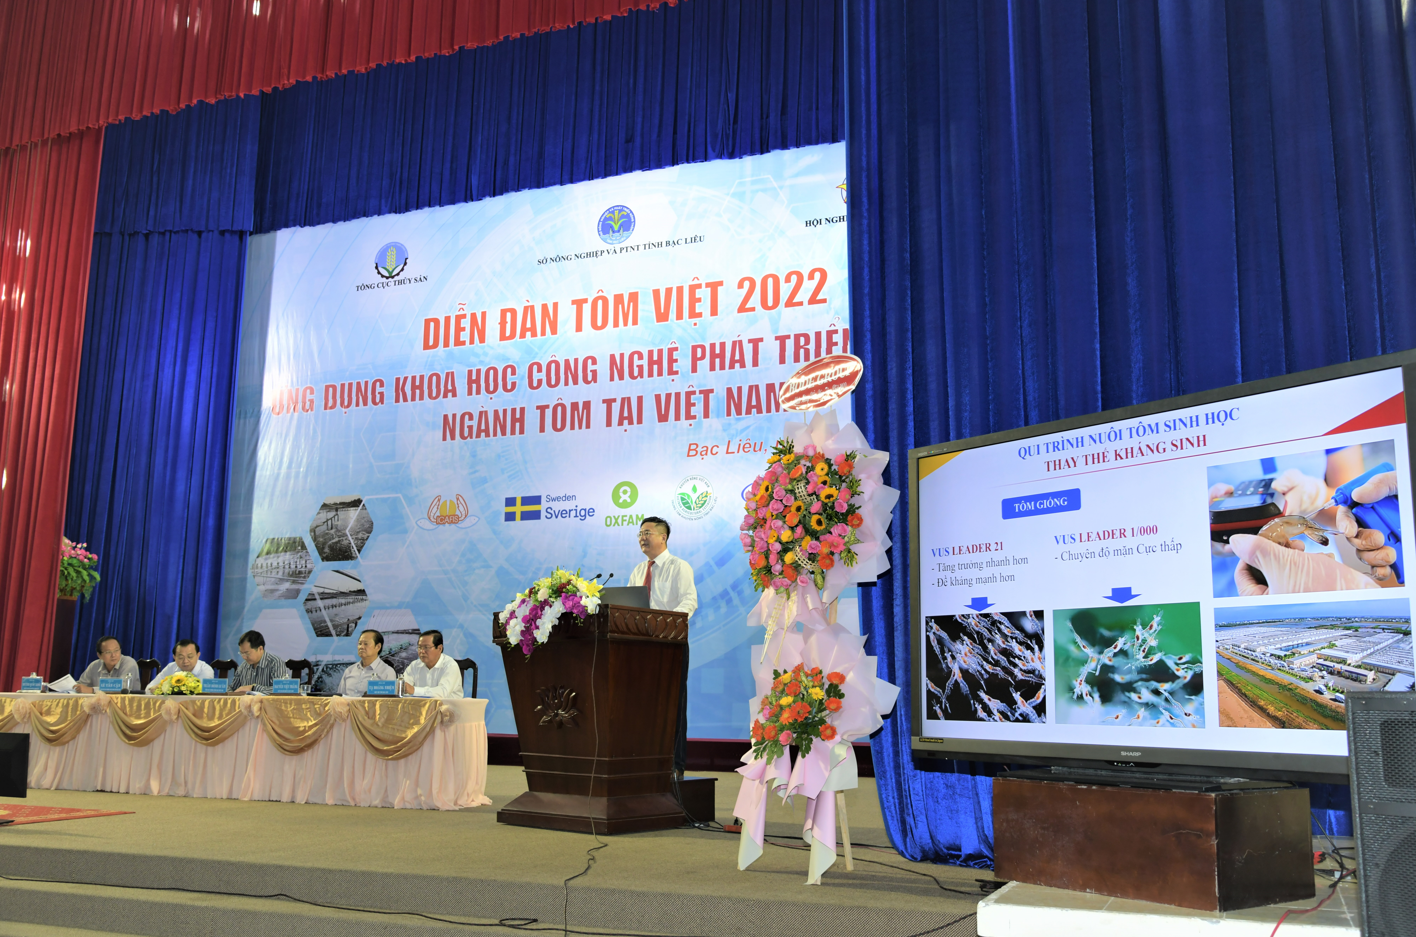 Việt Úc lan toả thông điệp nuôi tôm không kháng sinh và ứng dụng công nghệ cao bền vững - Ảnh 3.